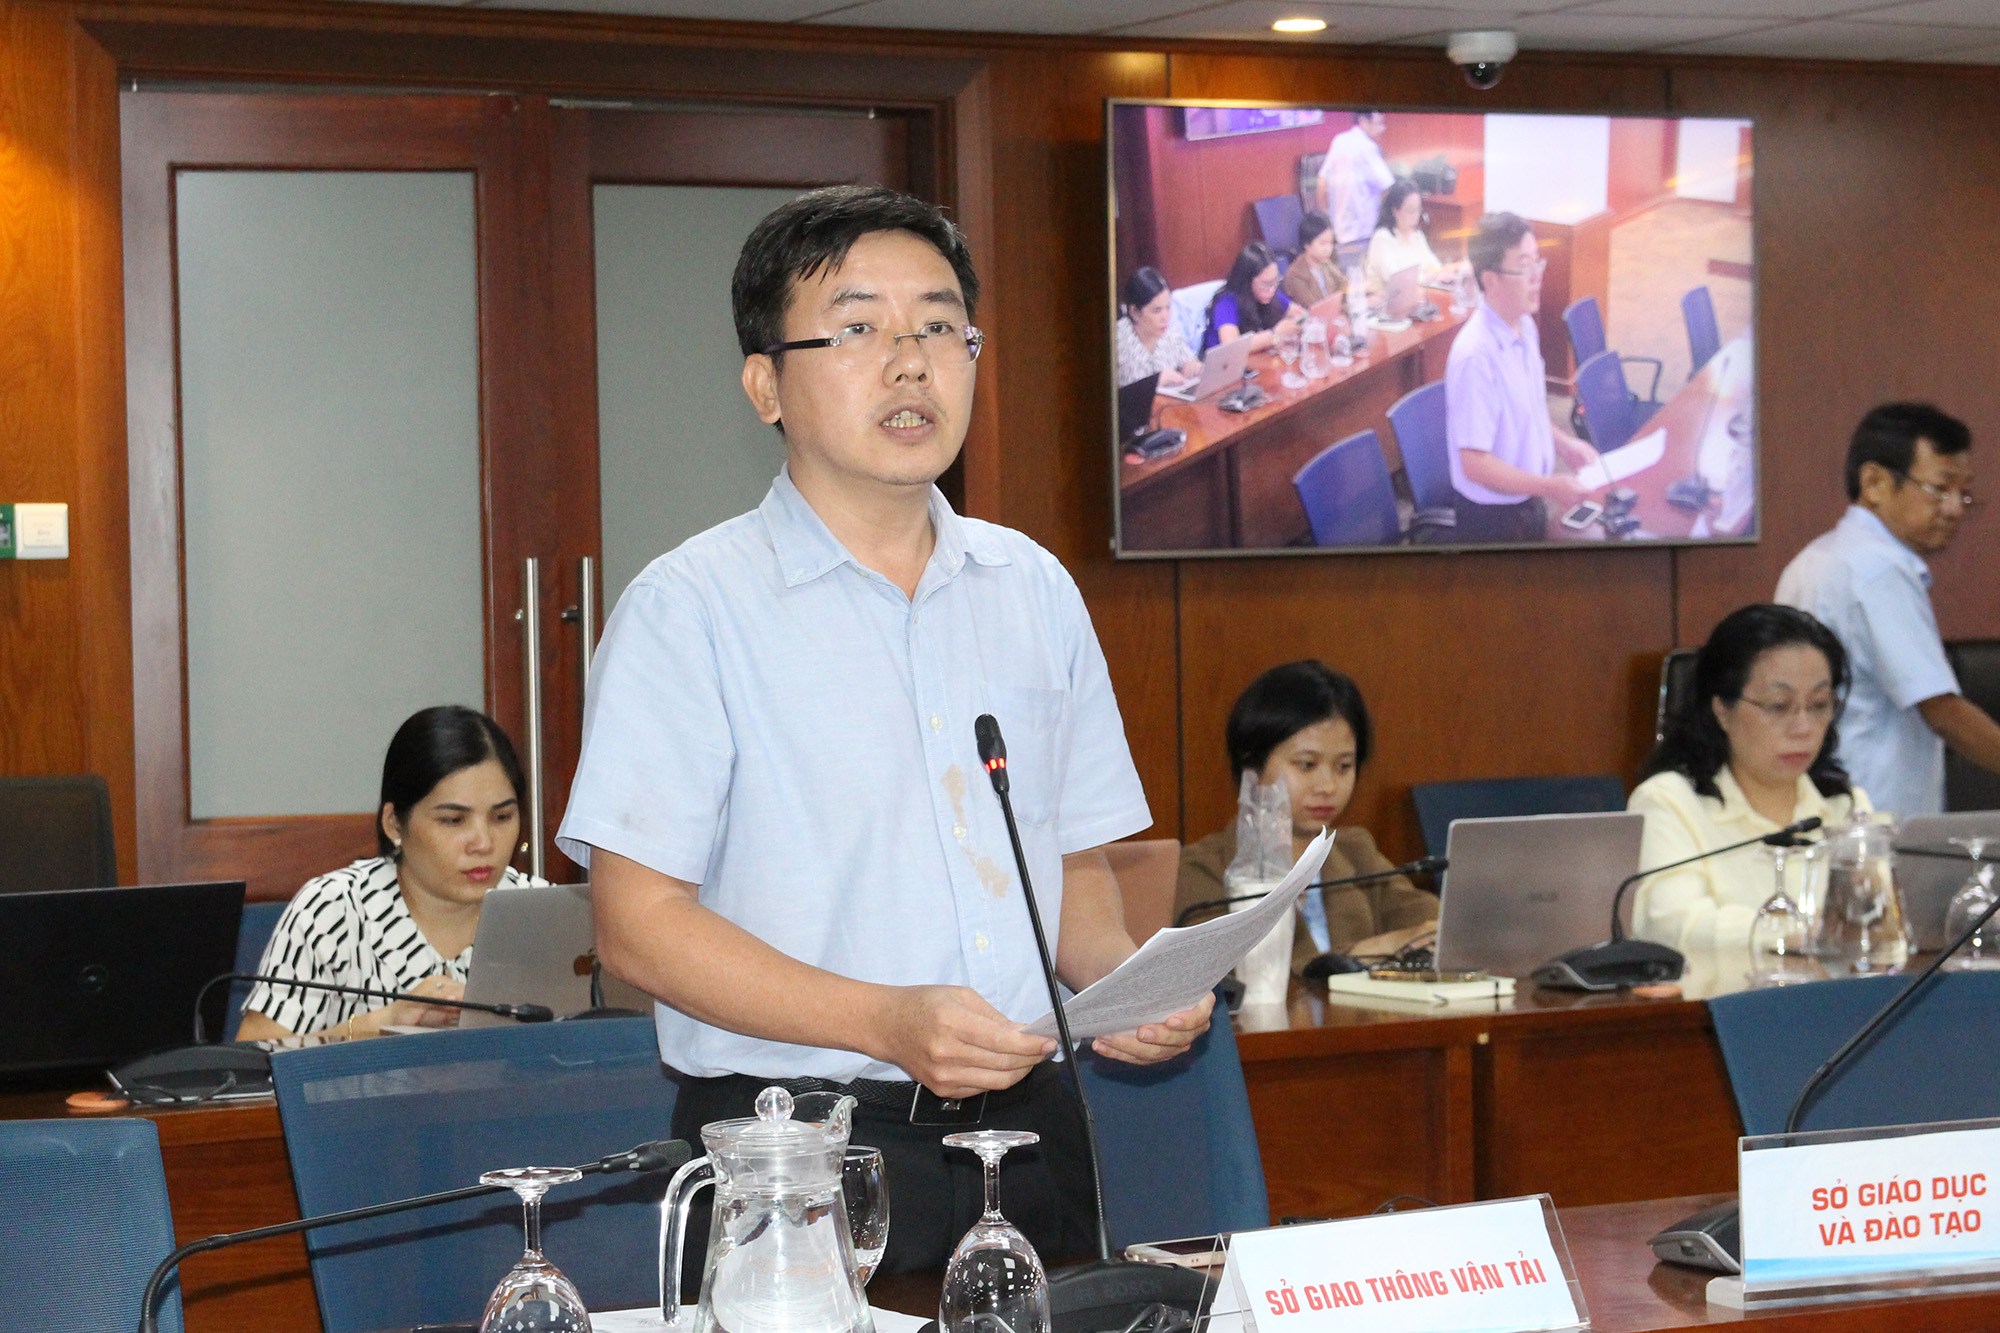 Đồng chí Ngô Hải Đường, Trưởng Phòng Khai thác hạ tầng giao thông đường bộ, Sở GTVT TP. Hồ Chí Minh tại buổi họp báo (Ảnh: H.H).